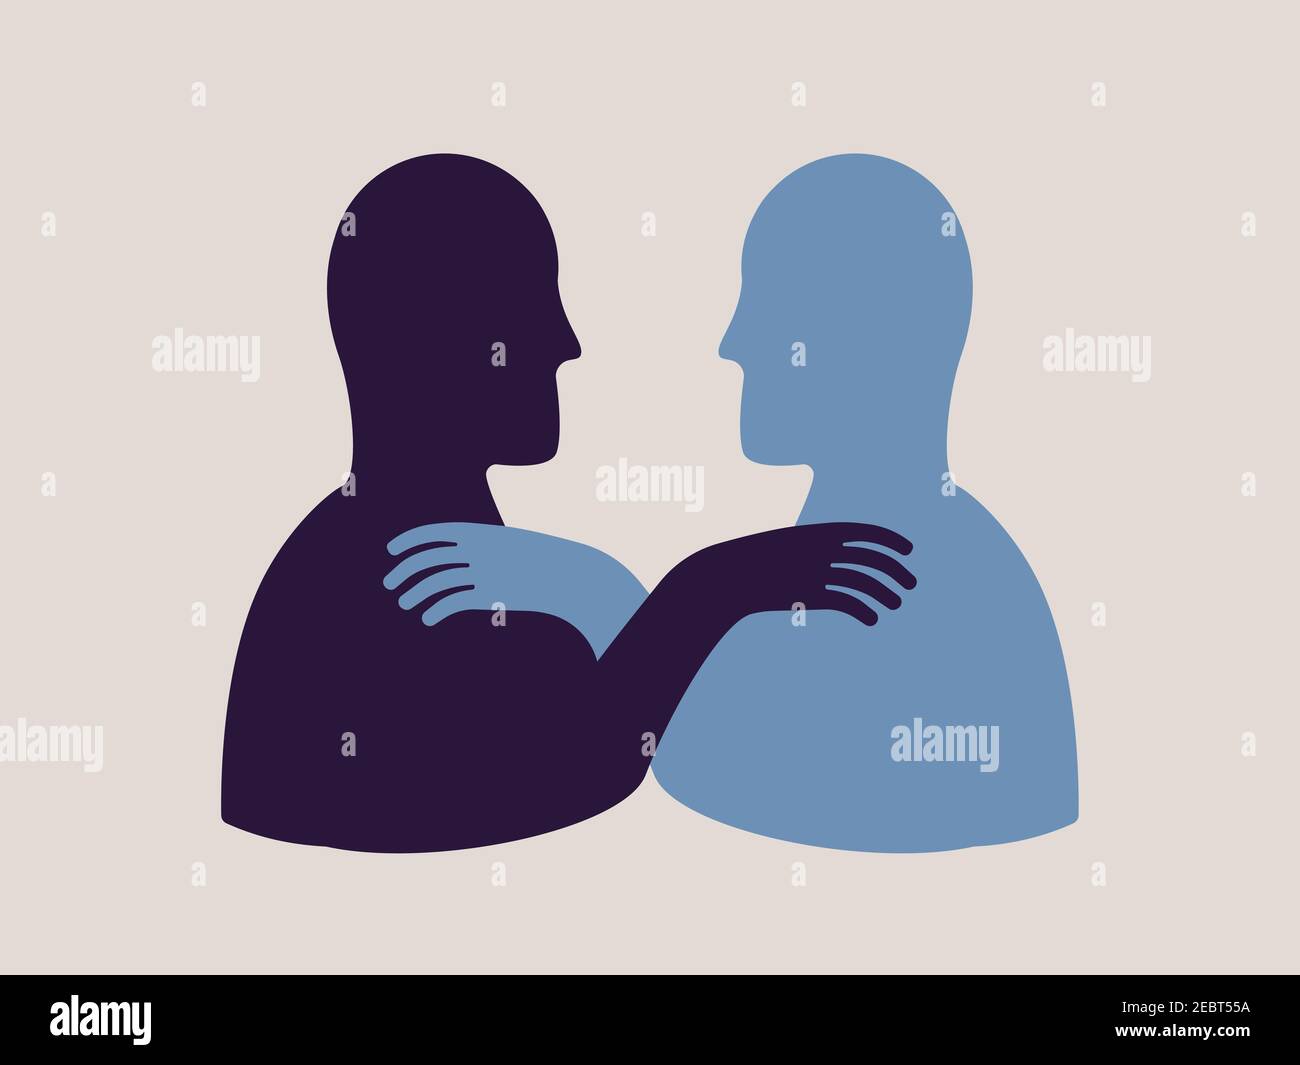 Solidarity Illustration Konzept. Zwei Personen zeigen gegenseitige Unterstützung. Personen, die sich gegenseitig helfen Symbol. Stock Vektor